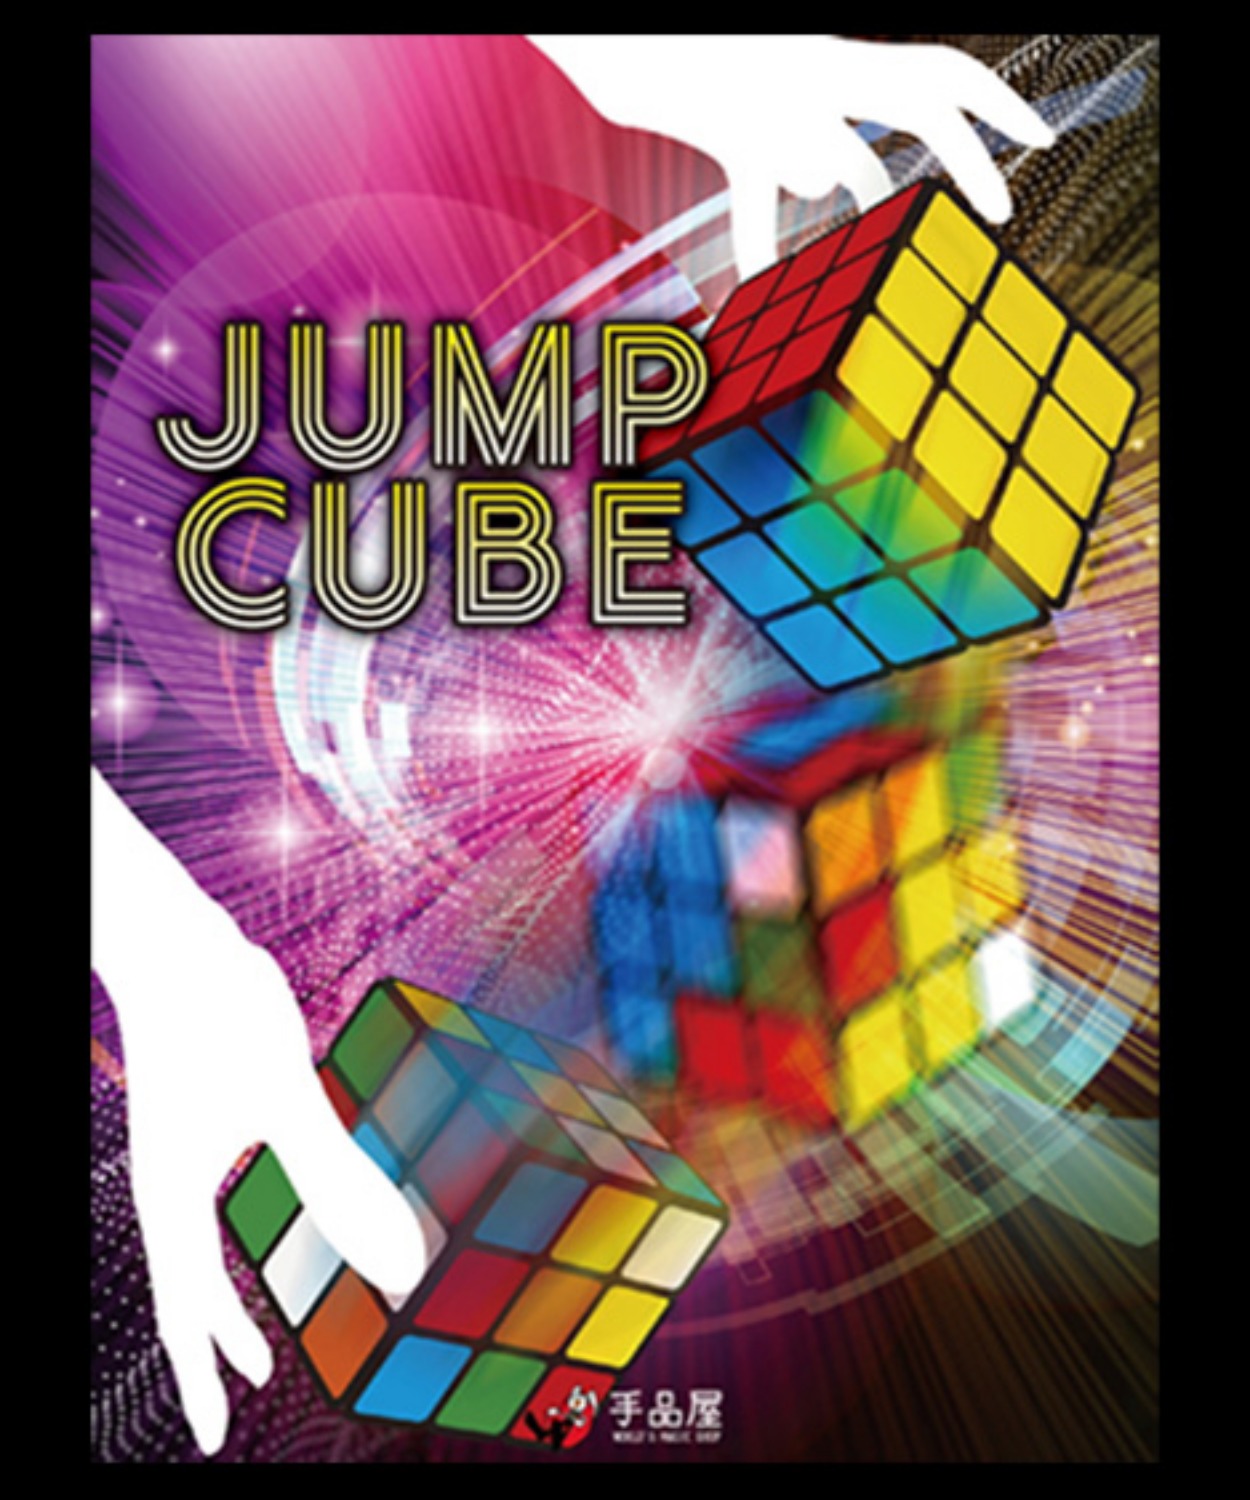 [점프큐브] JUMP CUBE by SYOUMA - 관객의 눈앞에서 큐브가 서서히 (저절로)맞춰지는 아주 비쥬얼한 마술입니다.